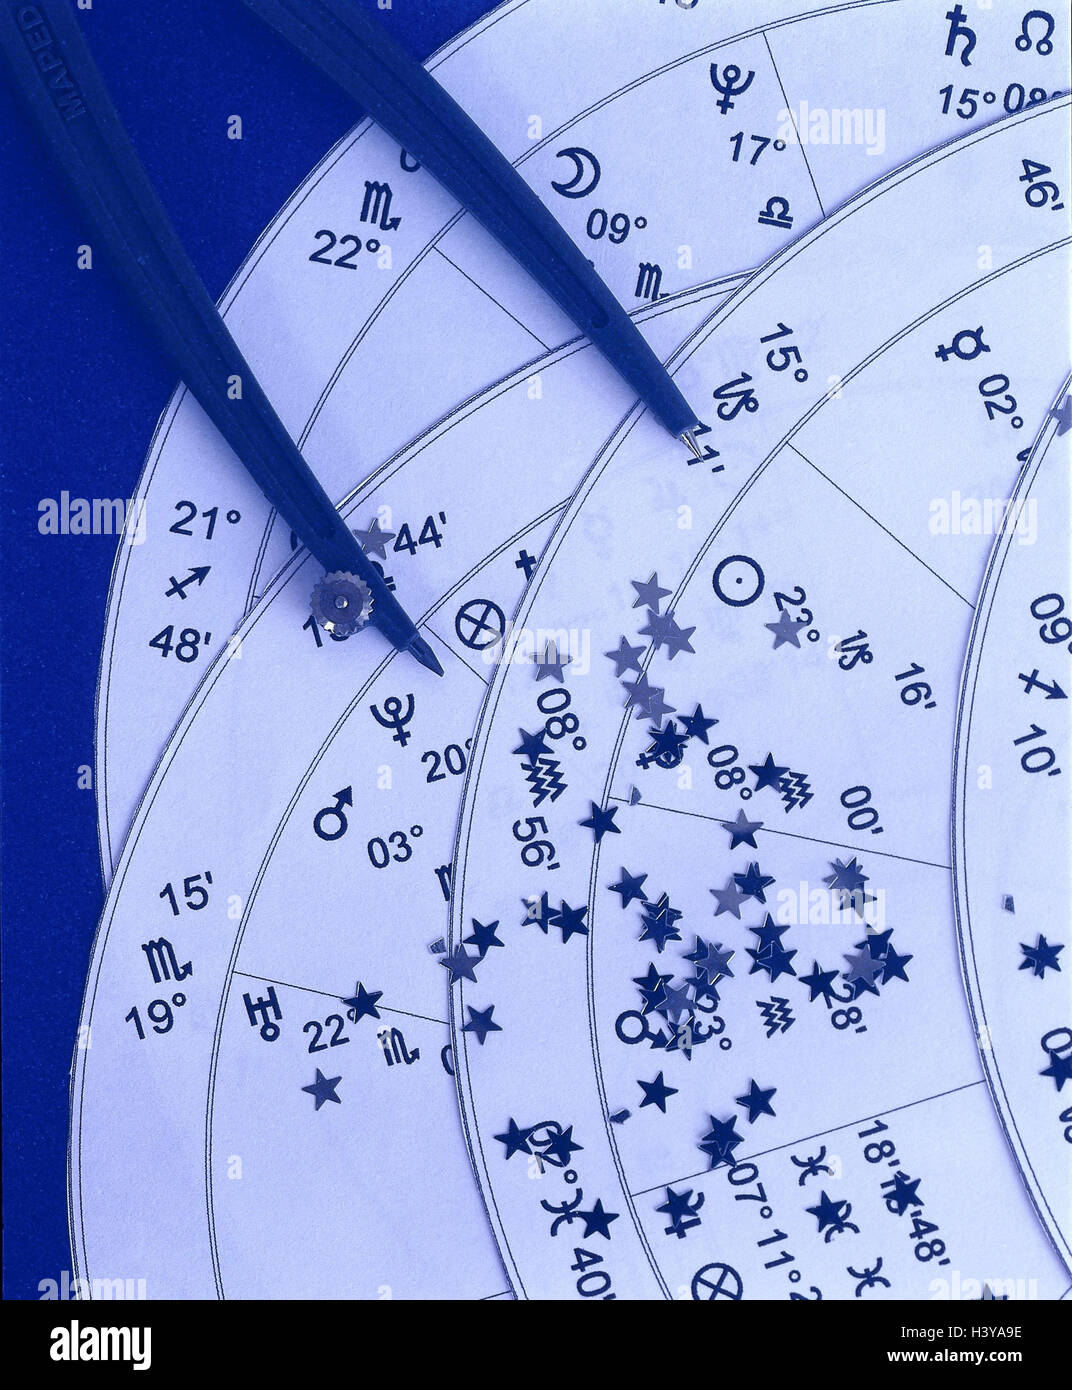 La Astrología, Horóscopo, cortes, círculos, detalle Dekosternchen,  bodegones, Stern la interpretación, Horóscopo, constelaciones de estrellas,  constelaciones, signos del zodíaco, Zodiac, signo del zodiaco, signos del  zodiaco el zodiaco, interpretación ...